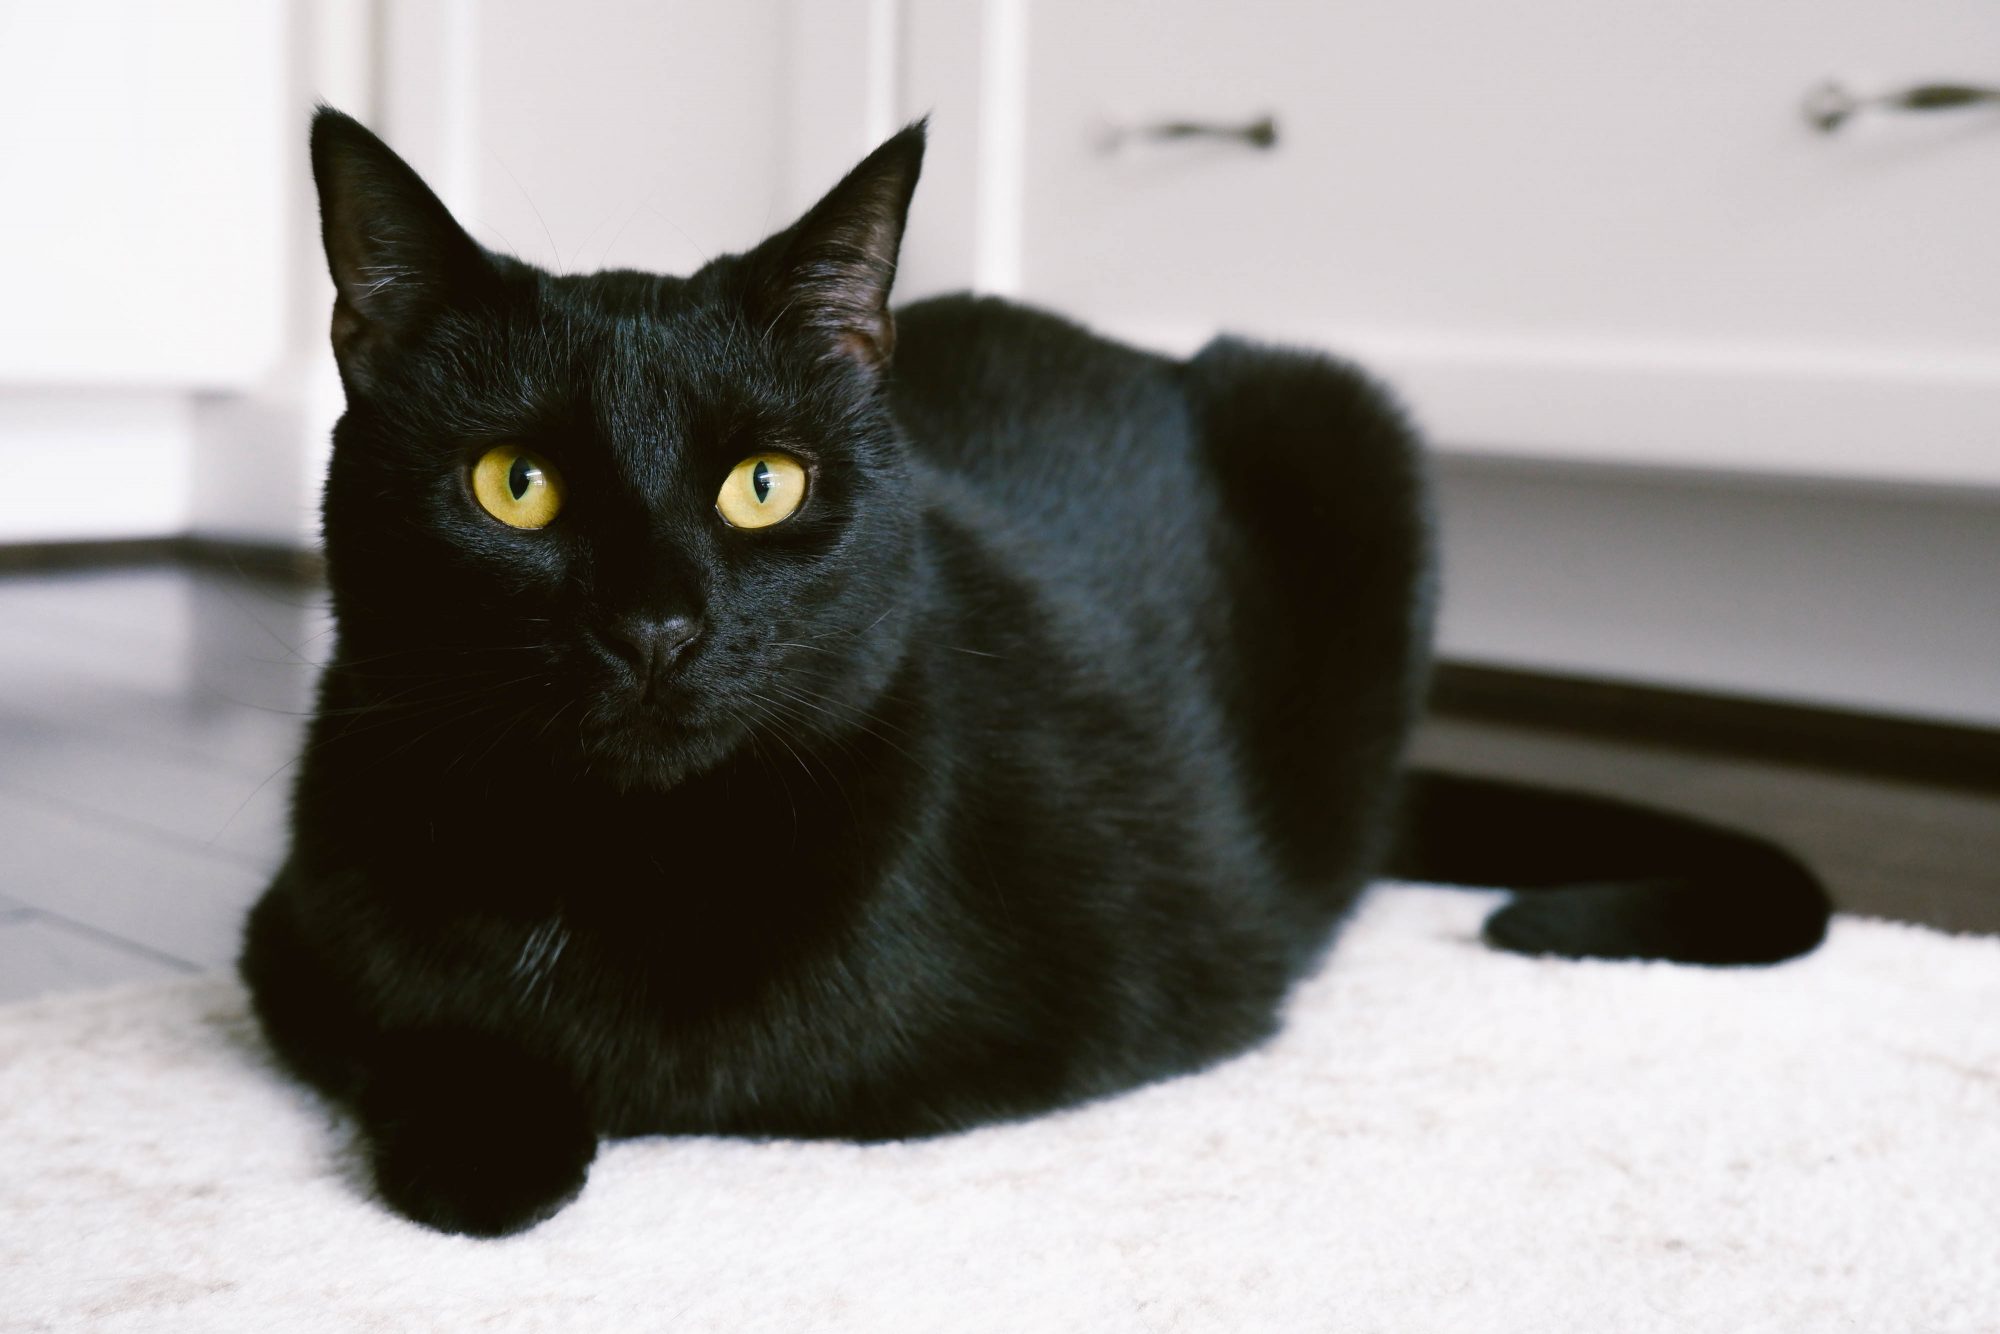 Mèo đen hoặc còn gọi là "mèo mun" vì nó có bộ lông đen nên ít người thích nuôi loài mèo này